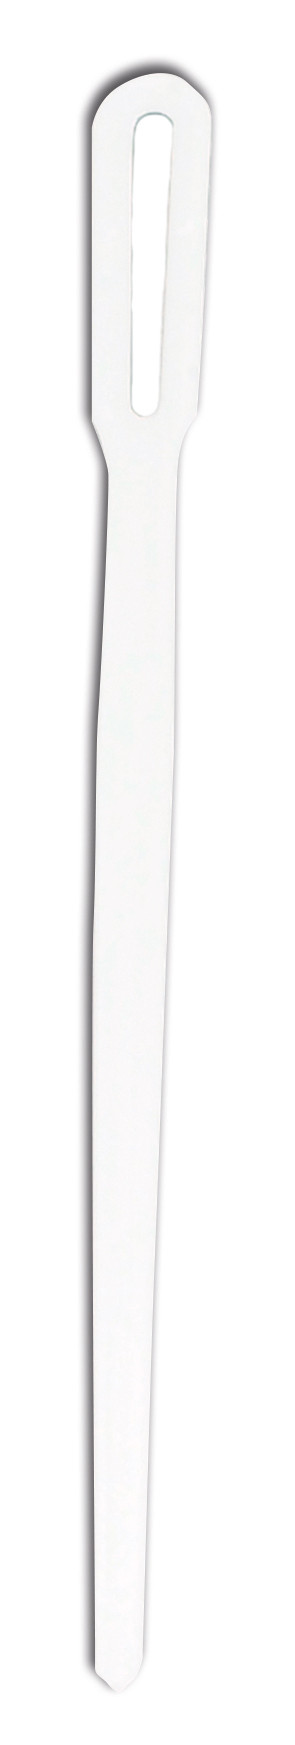 Rørepind, hvid, i disp.,2000stk. plast Polystyren 11,2 cm